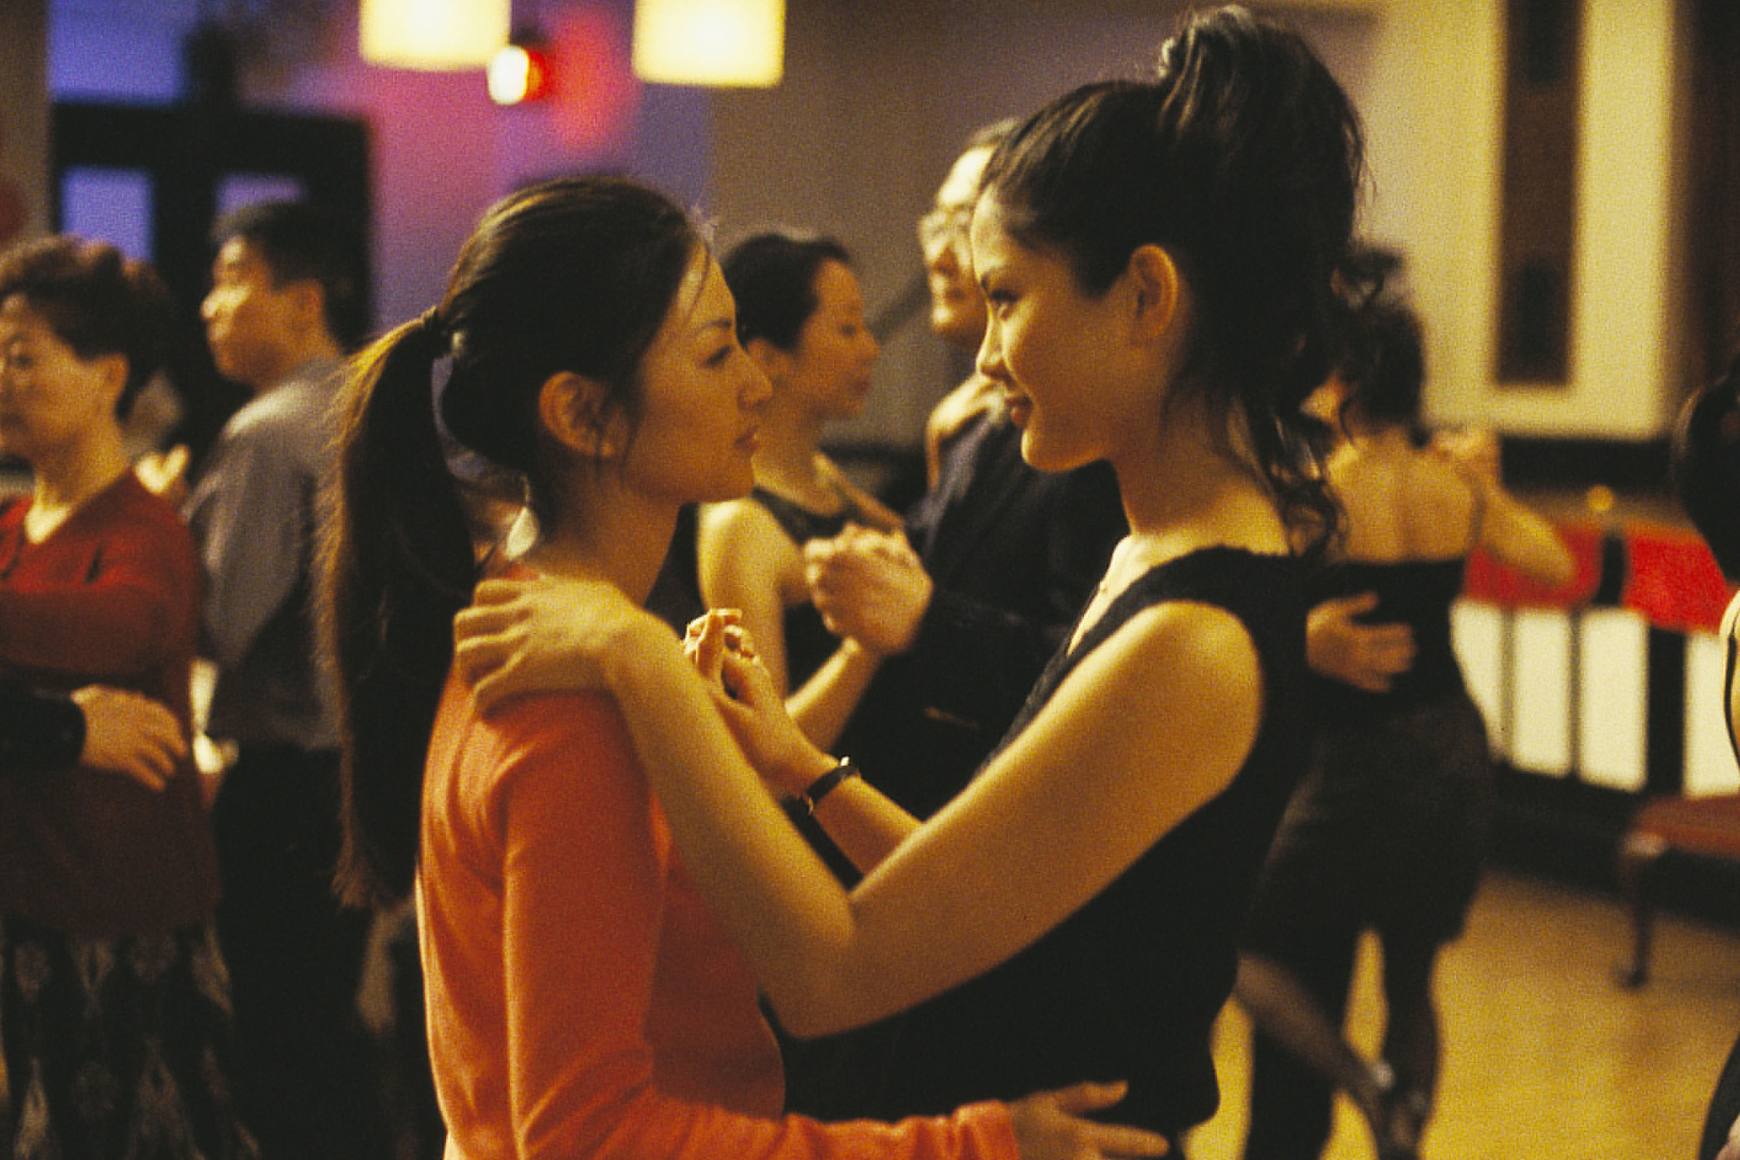 Michelle Krusiec e Lynn Chen dançam lentamente, olhando nos olhos uma da outra.